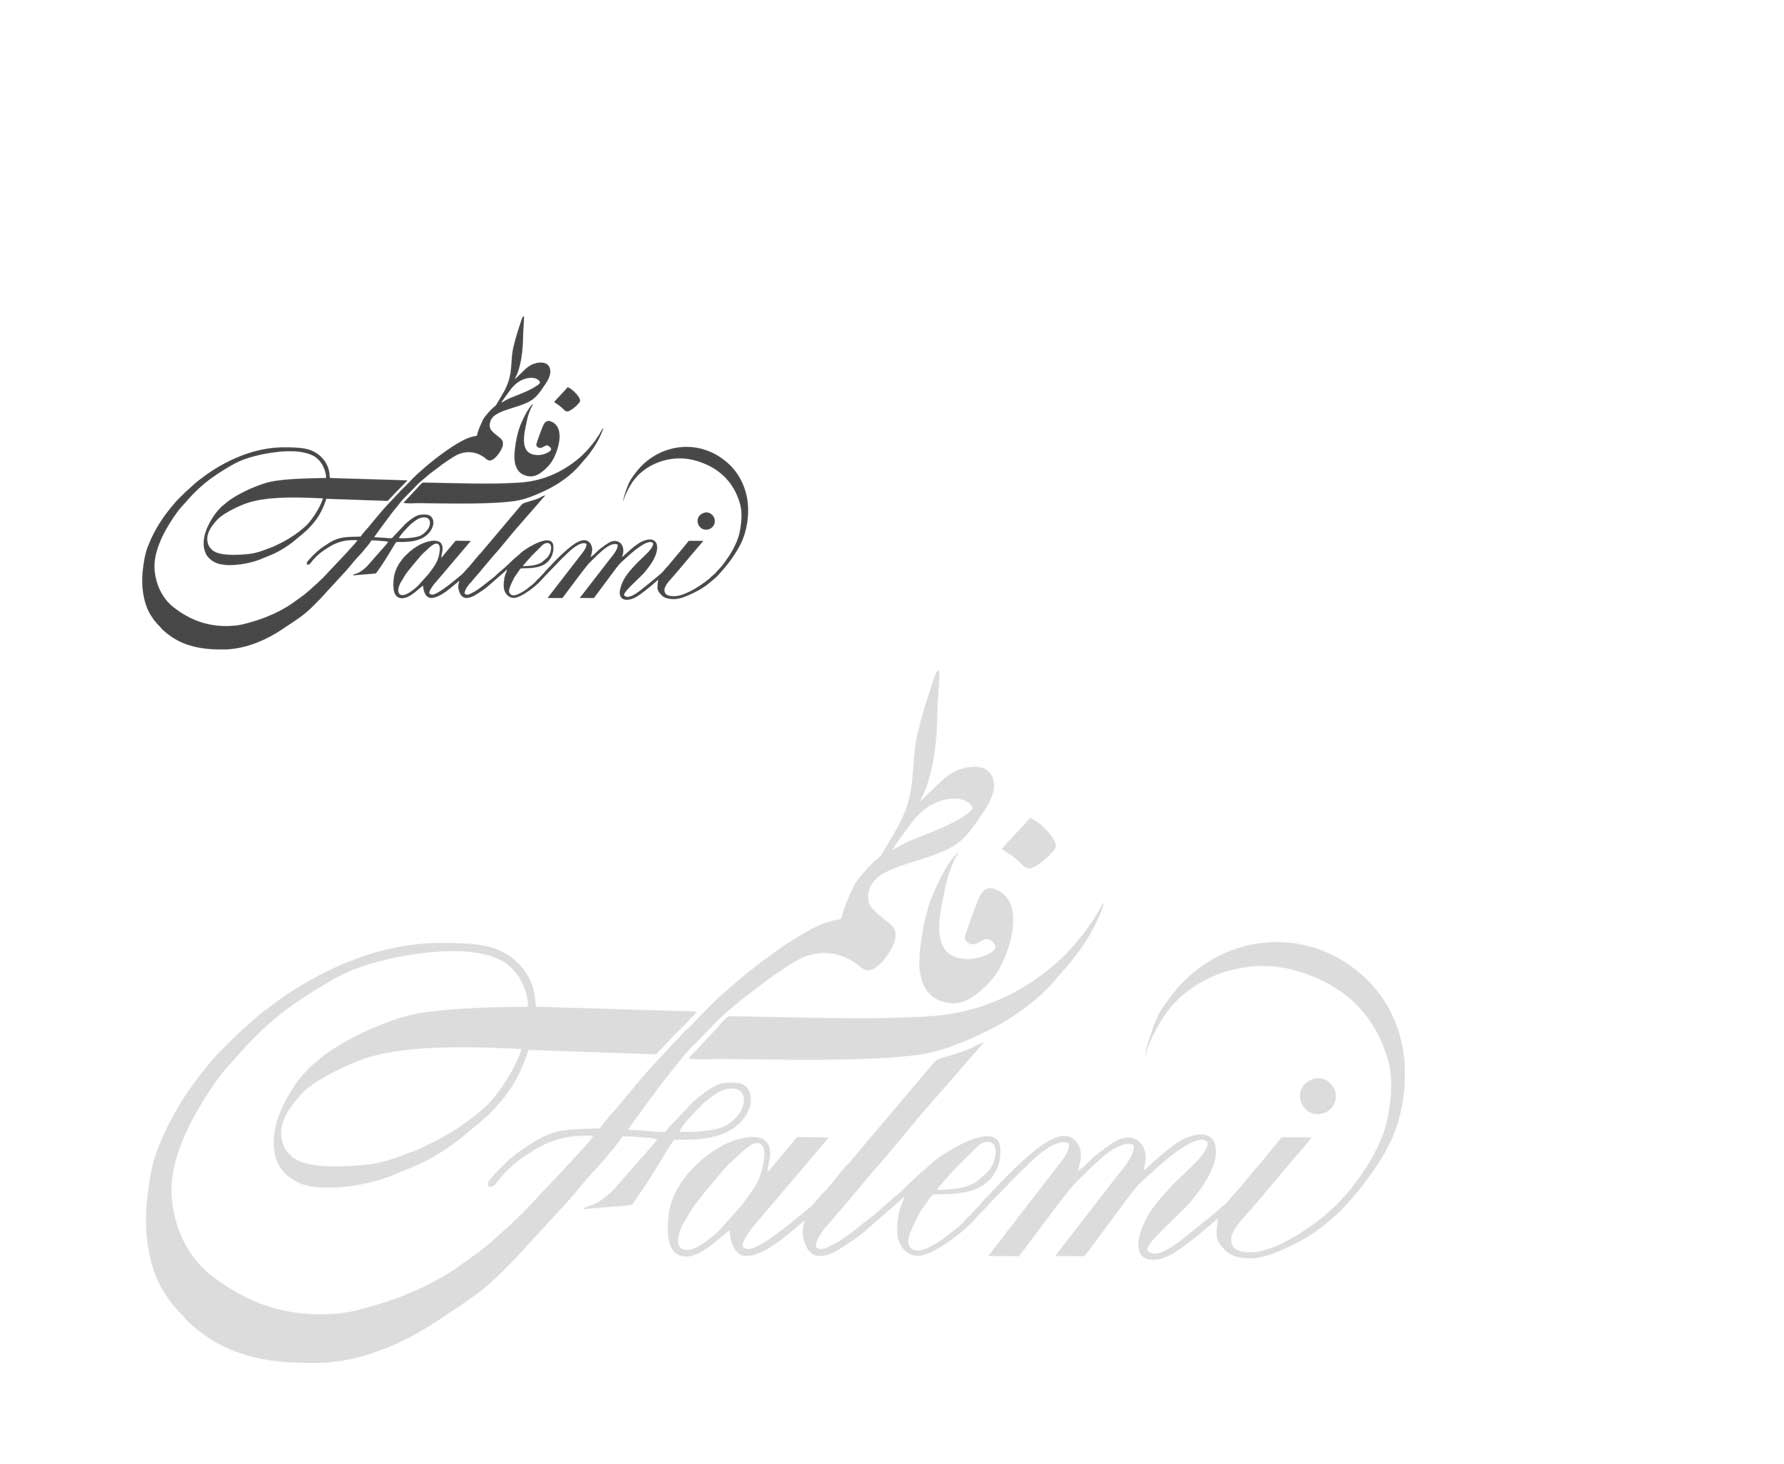 Fatemi - Fateh Sanat Group